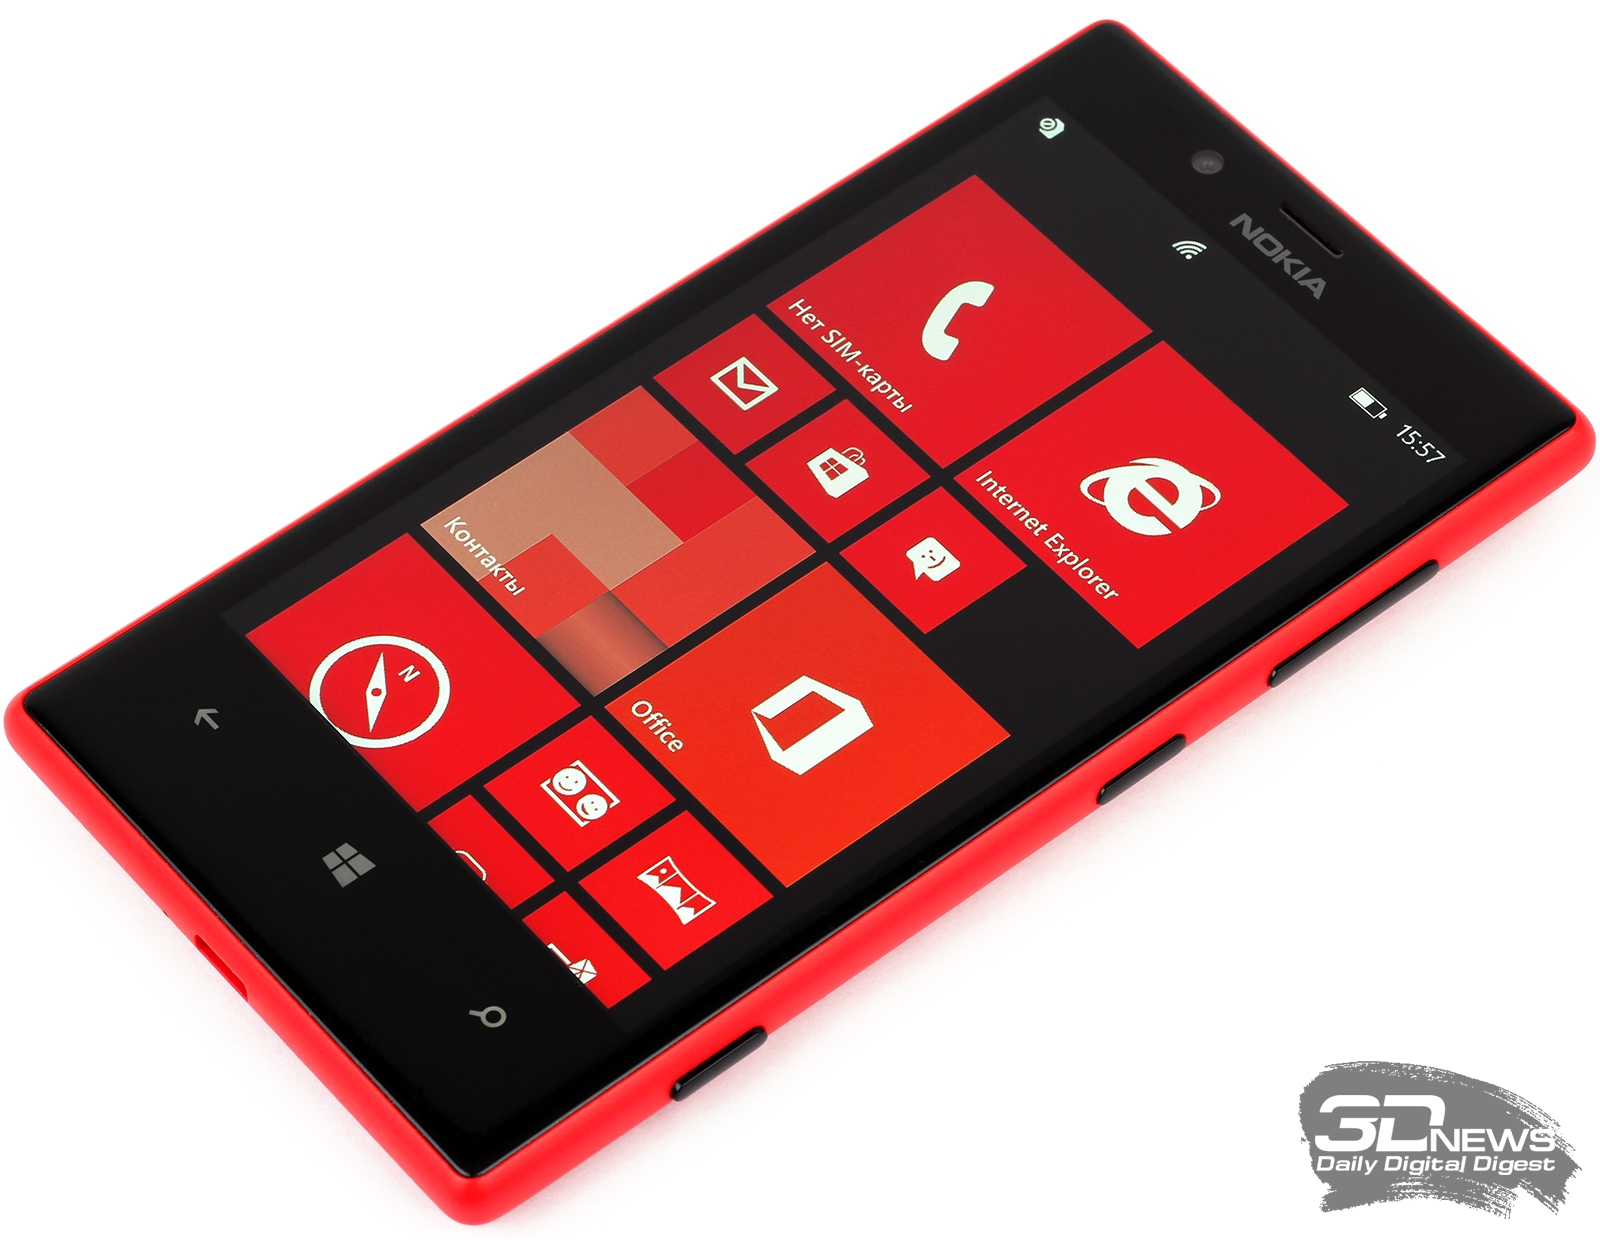 Как вернуть заводские настройки Nokia Lumia 520 и 630?